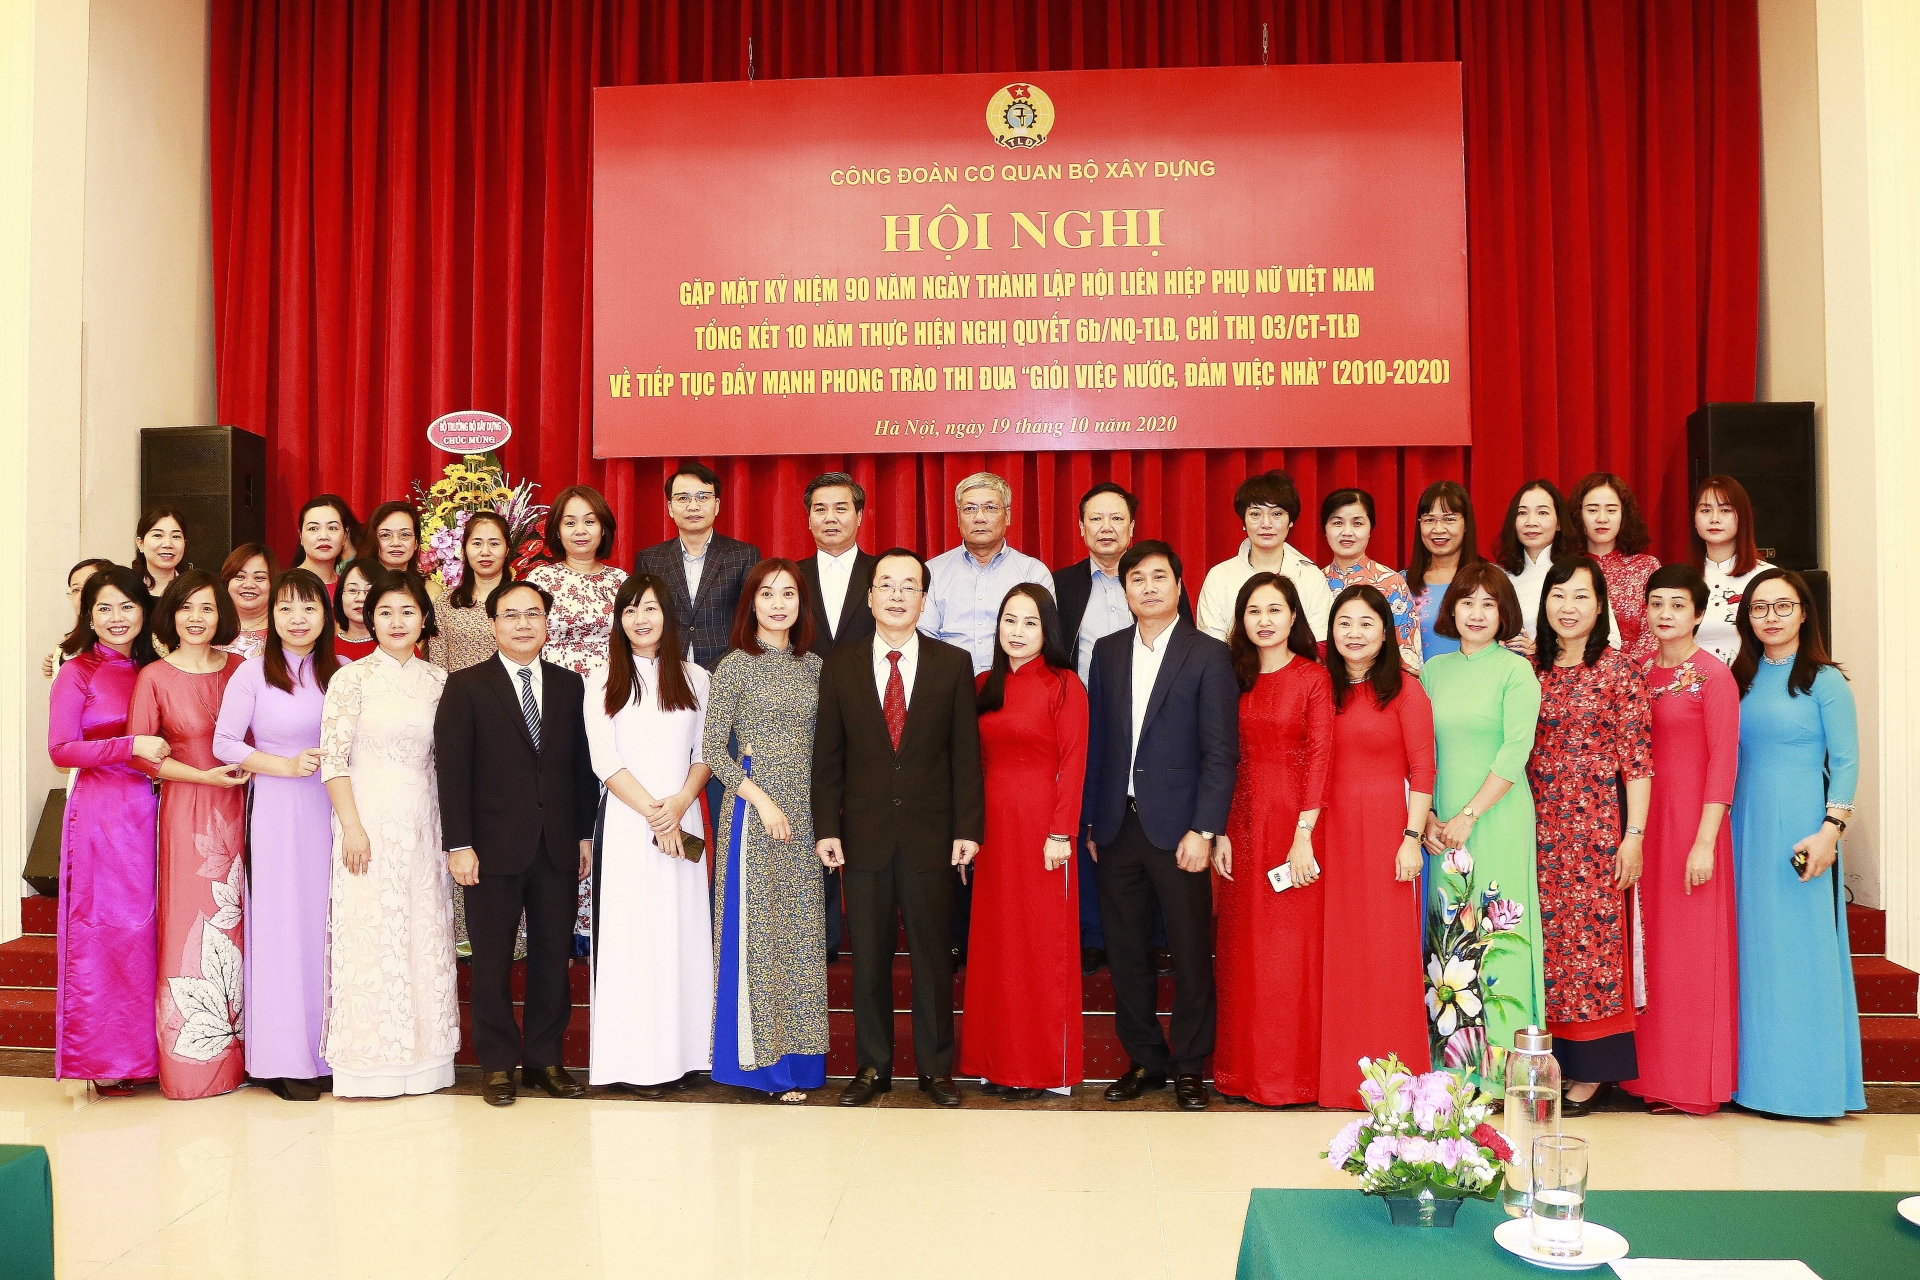 Công đoàn cơ quan Bộ Xây dựng tổ chức Hội nghị gặp mặt kỷ niệm 90 năm ngày thành lập Hội Liên hiệp Phụ nữ Việt Nam